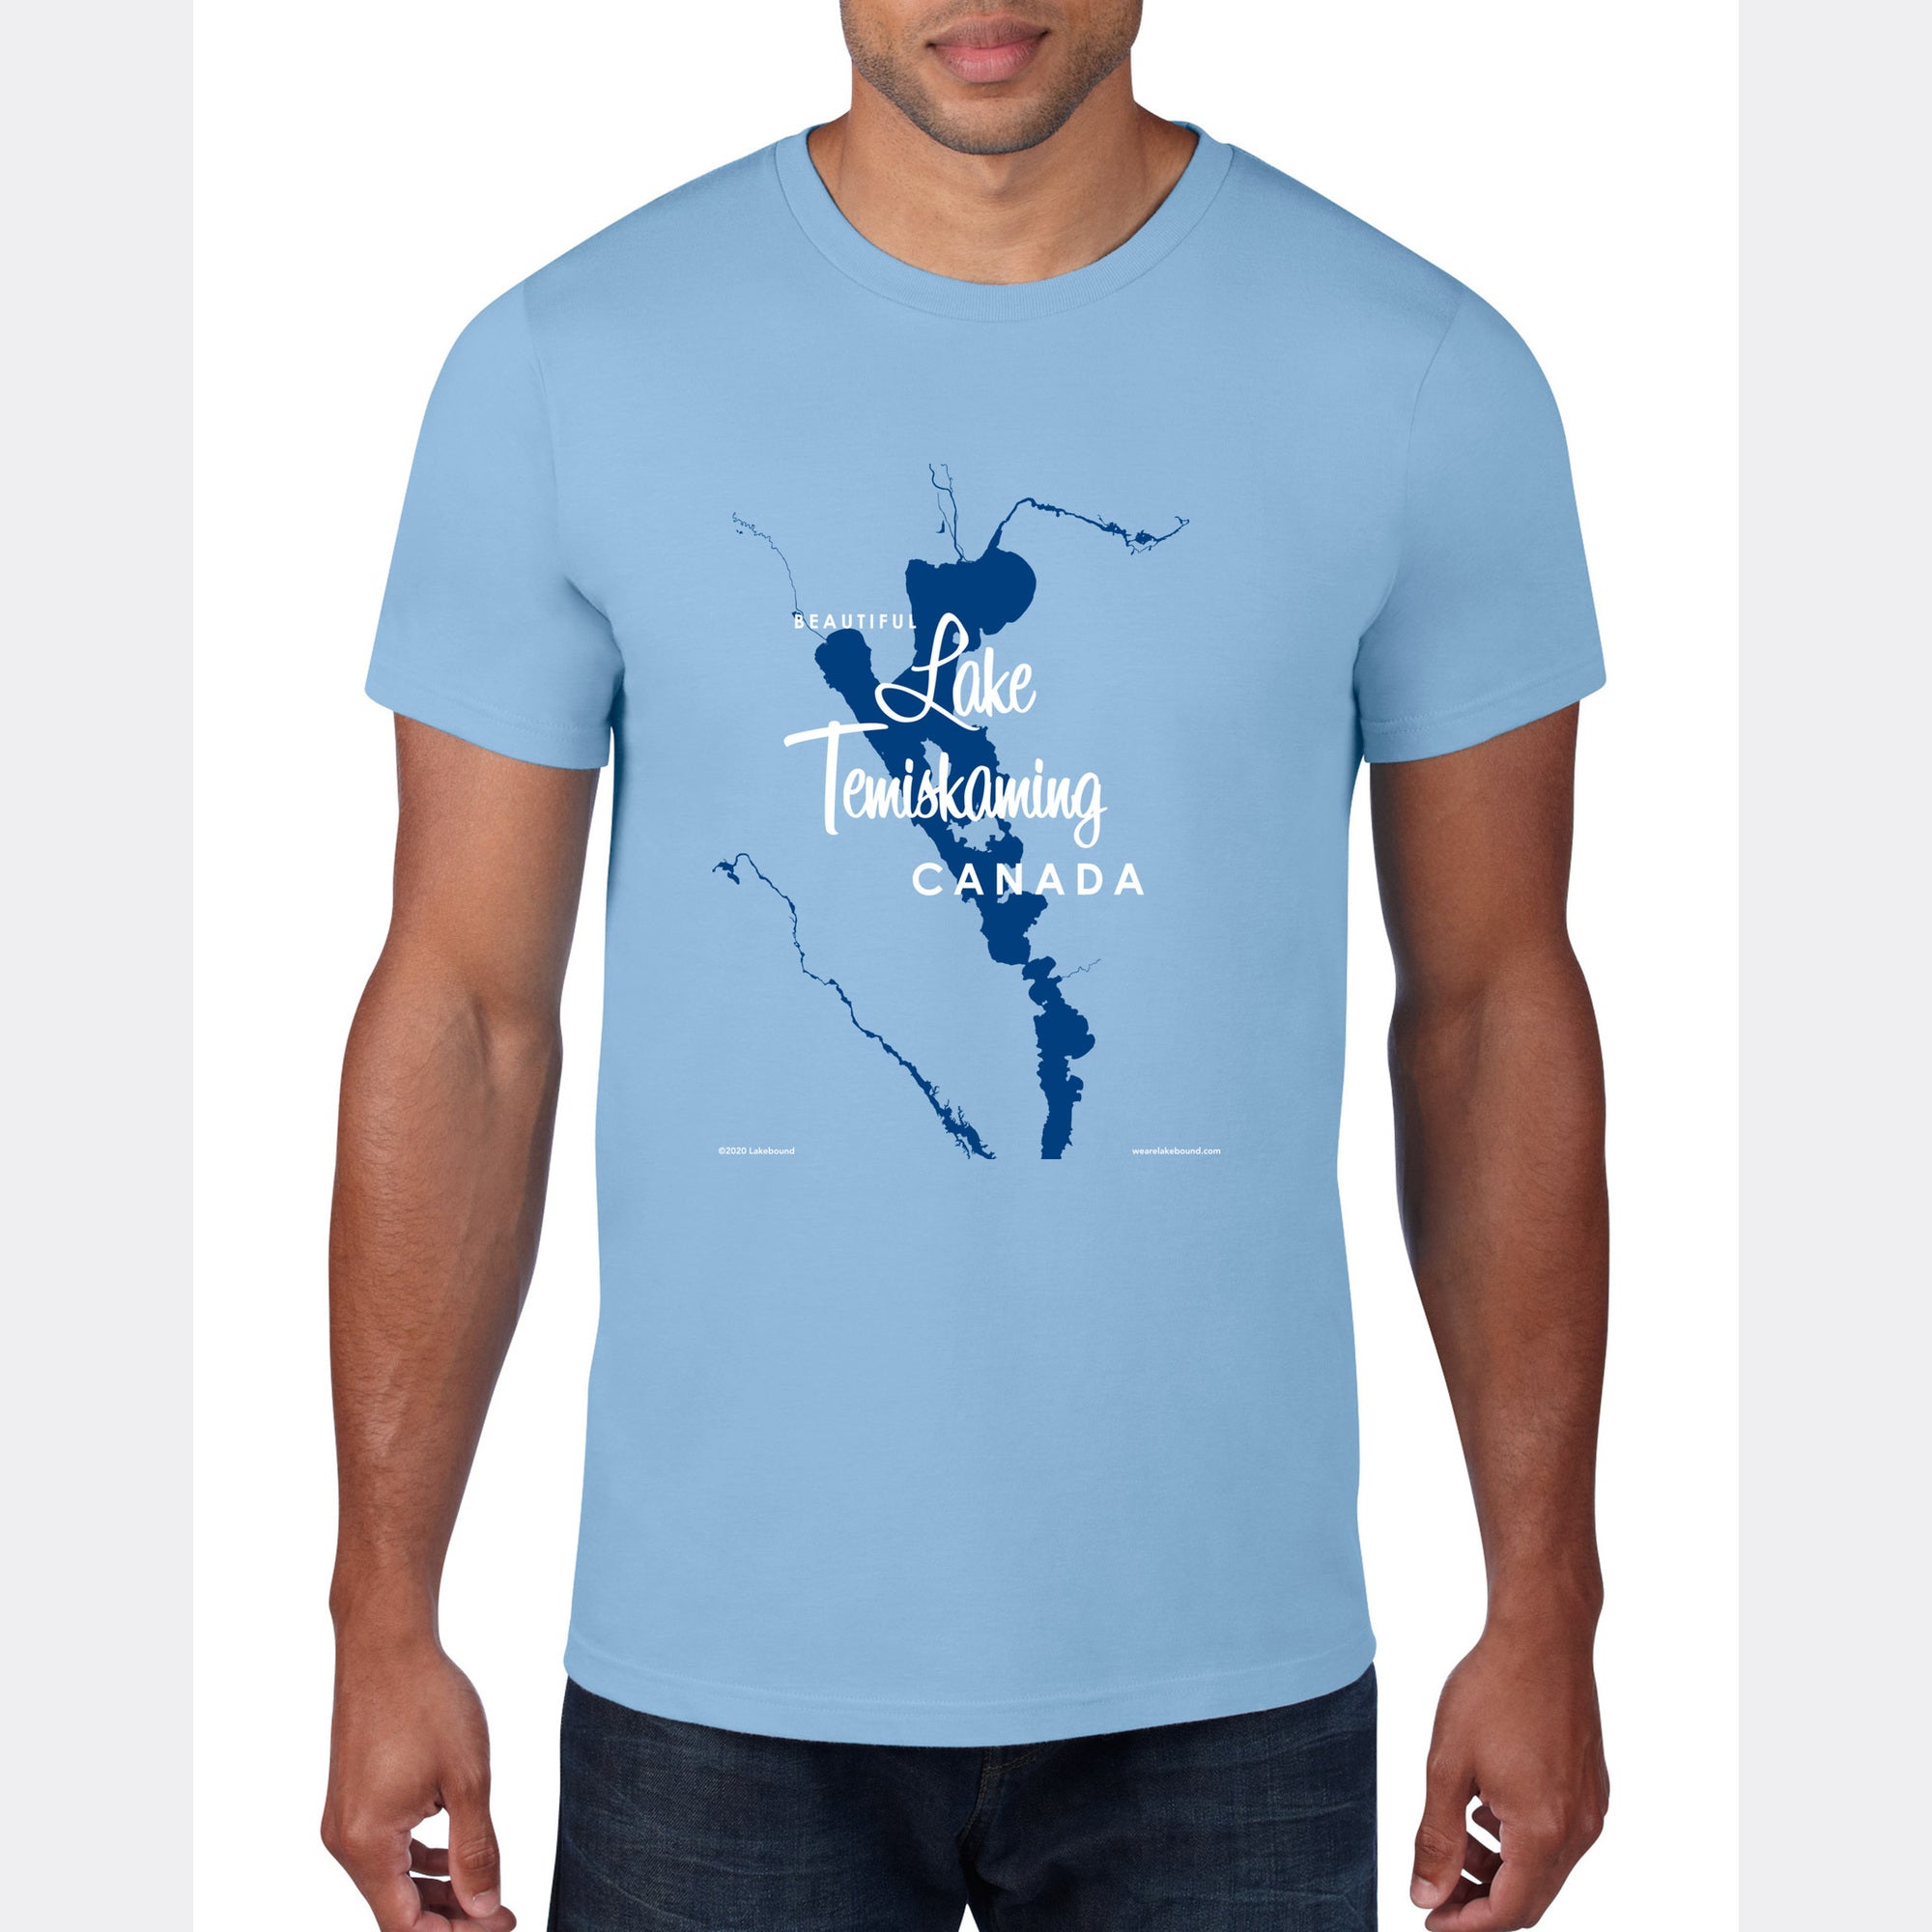 Lake Temiskaming Canada, T-Shirt